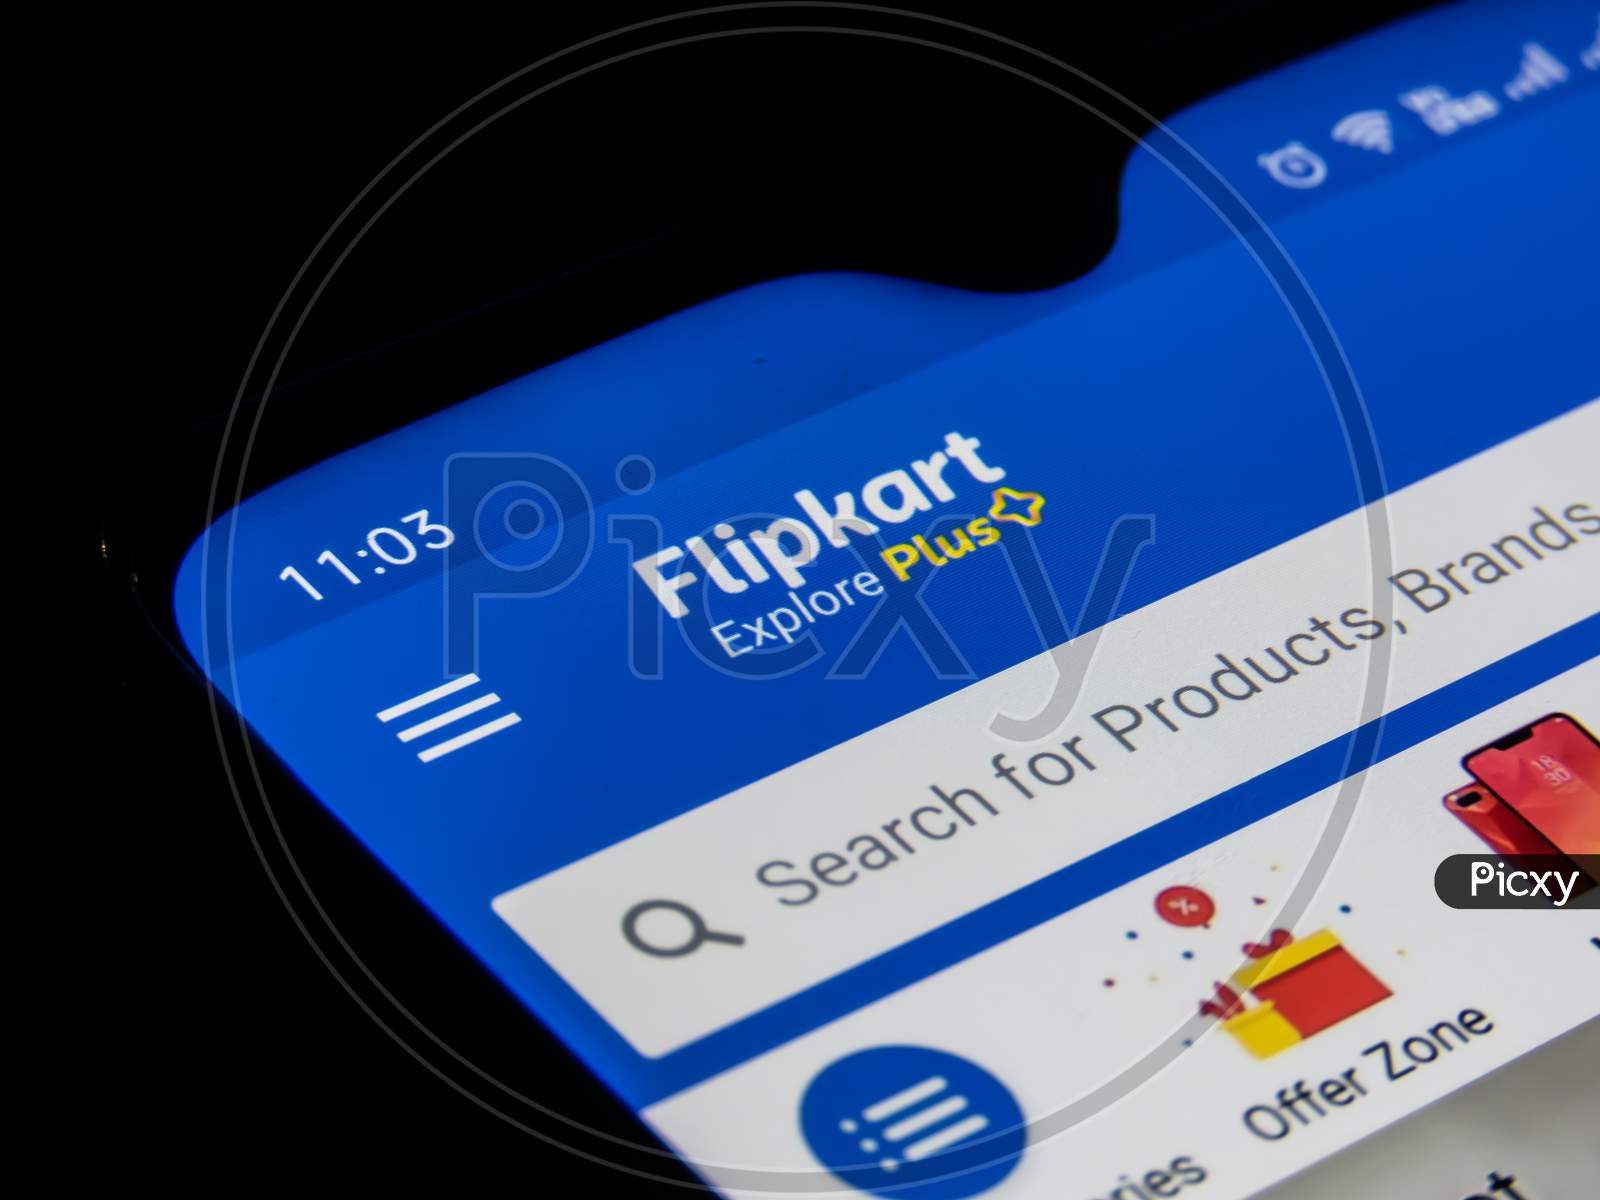 Flipkart App Or Icon On The Mobile Screen.